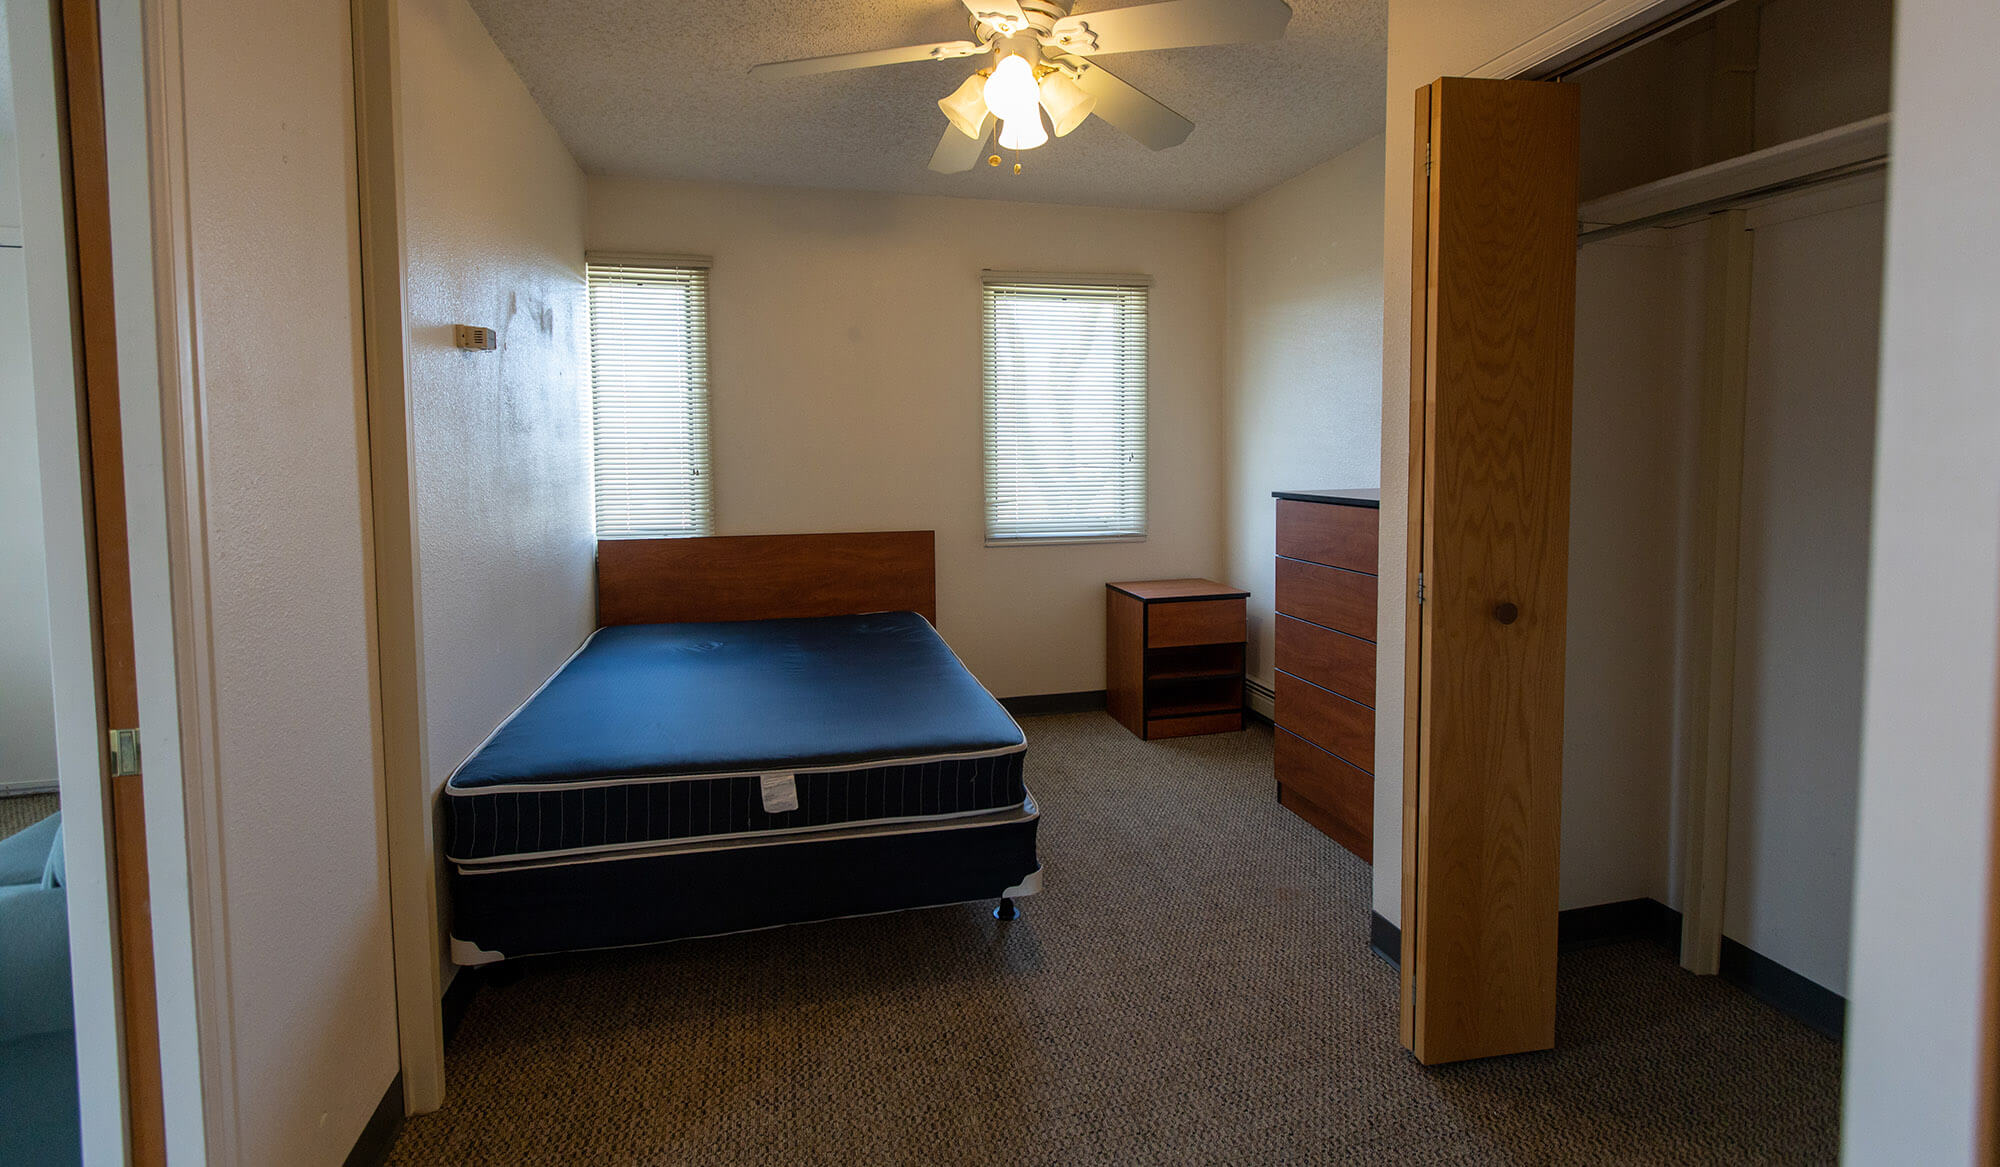 casper-college-thorson-Apartment-Interiors-22